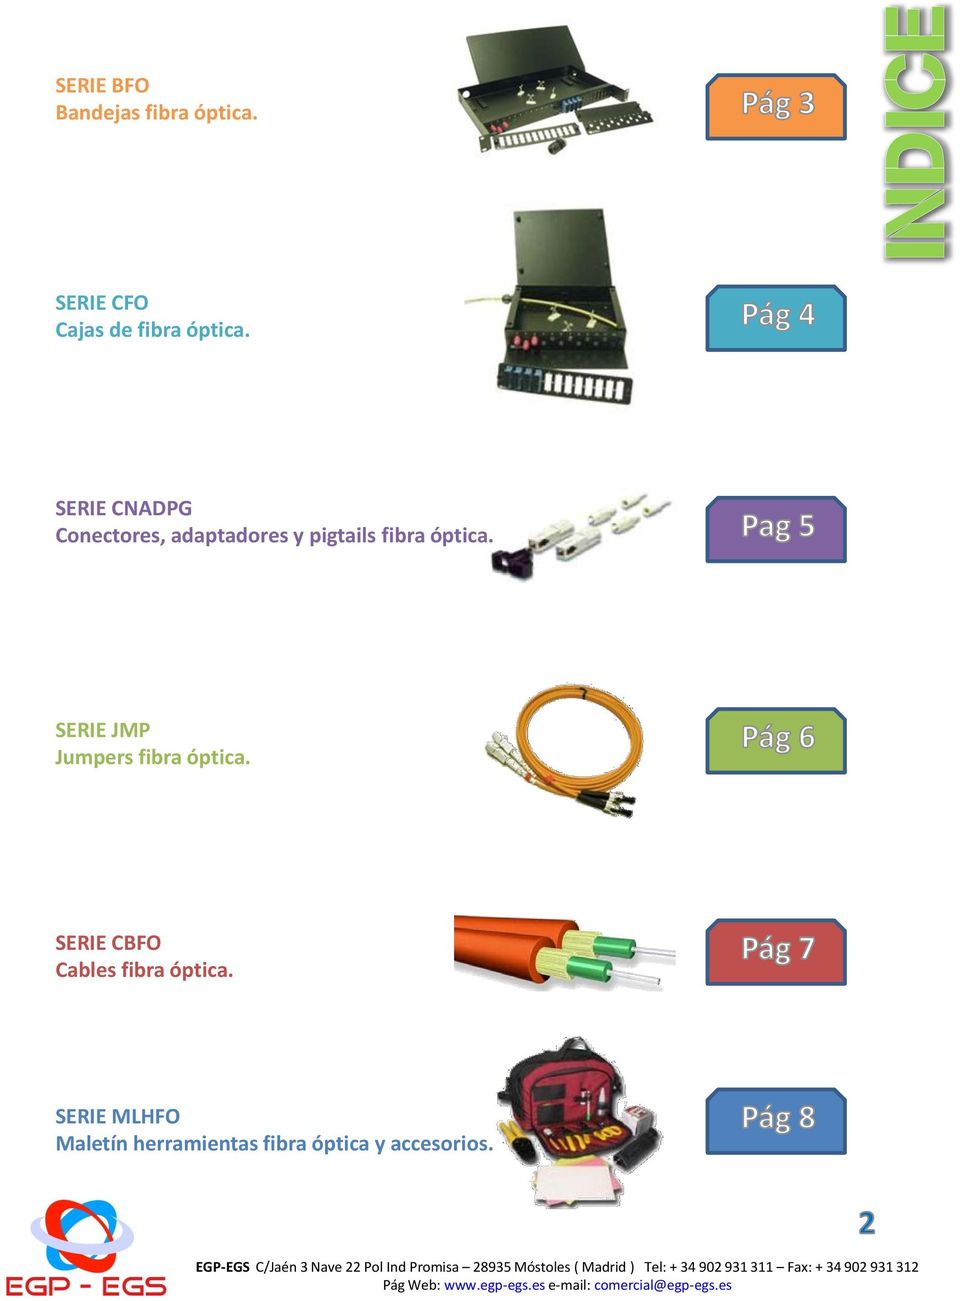 SERIE CNADPG Conectores, adaptadores y pigtails fibra óptica.